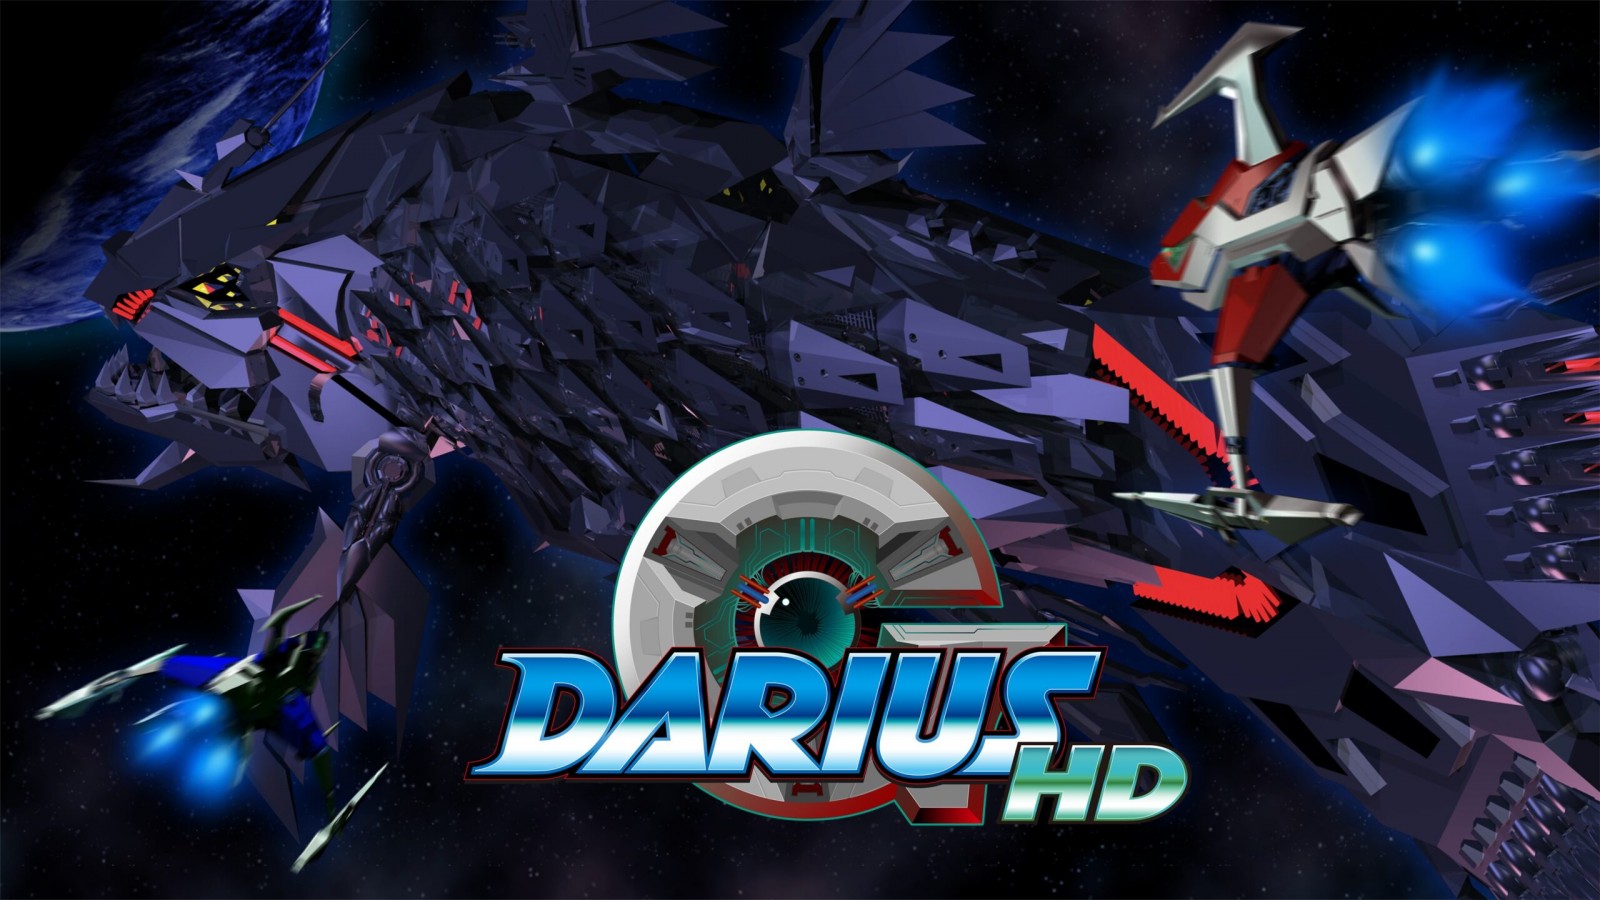 El clásico de 1997 G-Darius HD regresa a Nintendo Switch y PlayStation 4  